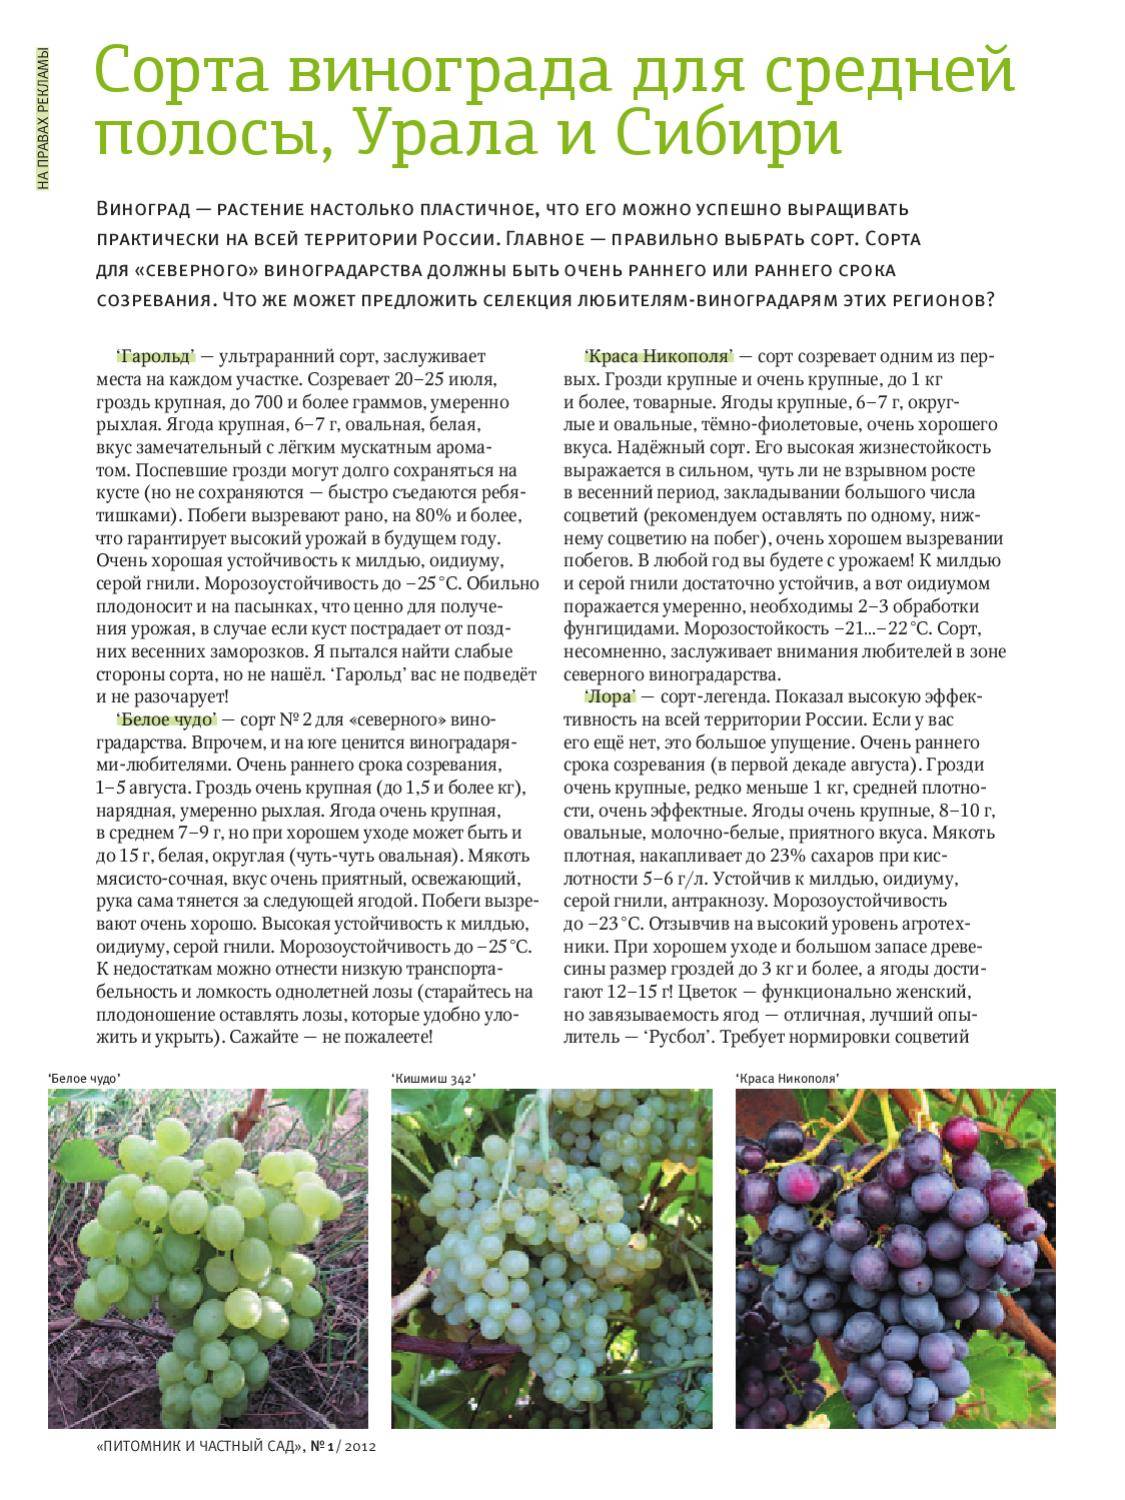 Виноград в сибири - посадка и уход для начинающих, выращивание в открытом грунте, как ухаживать весной